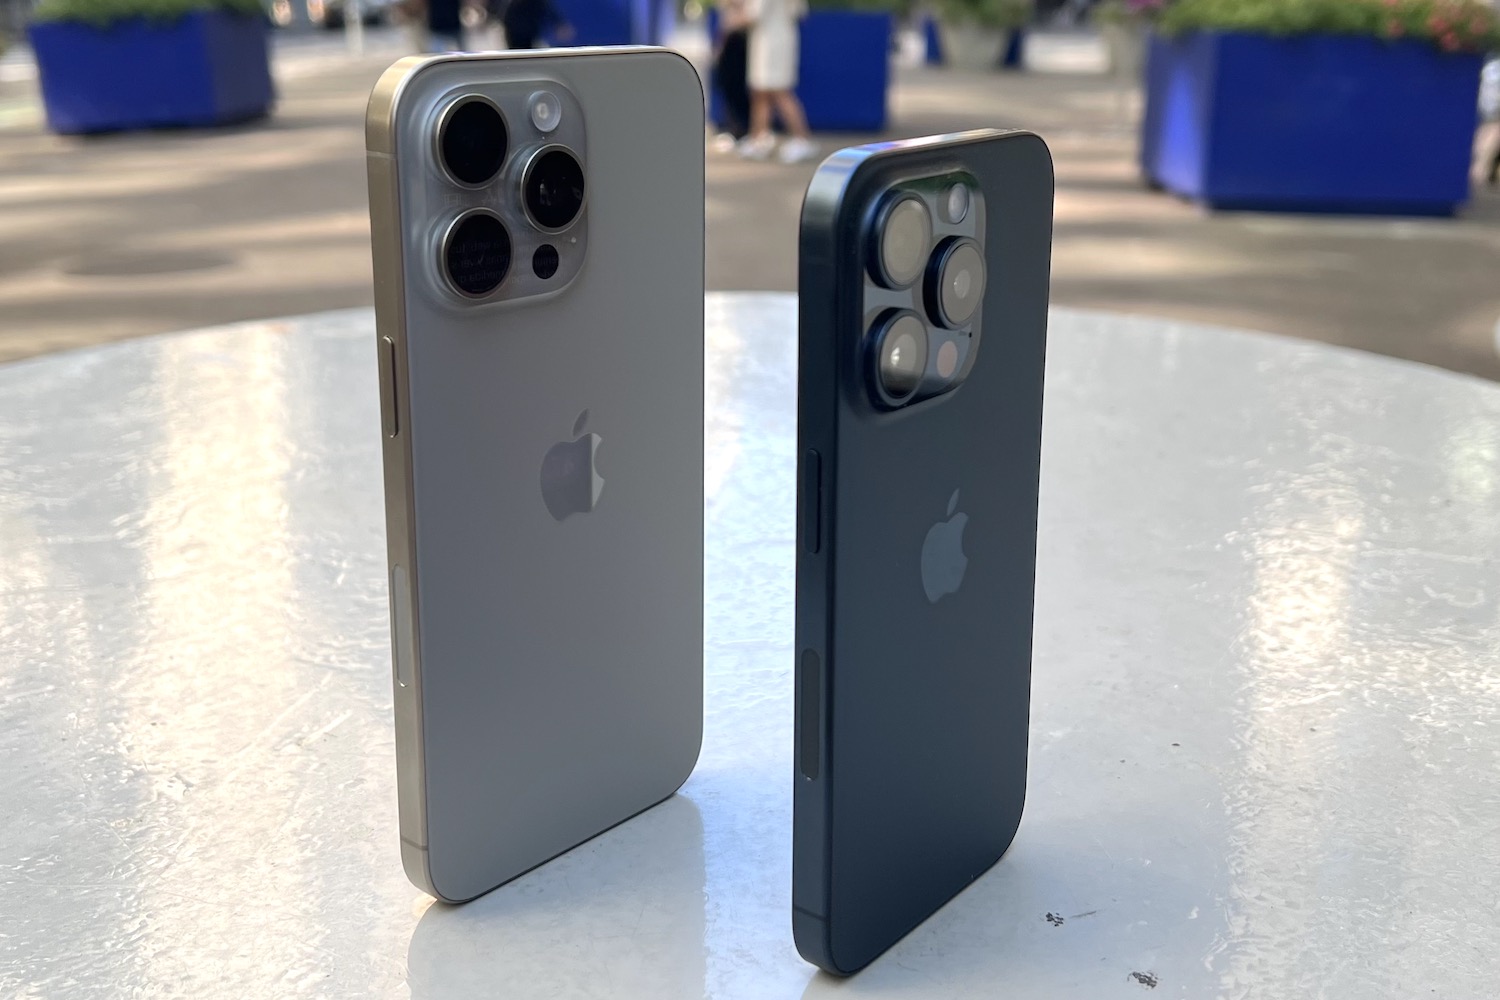 iPhone 15 Pro y iPhone 15 Pro Max, análisis: lo mejor de Apple